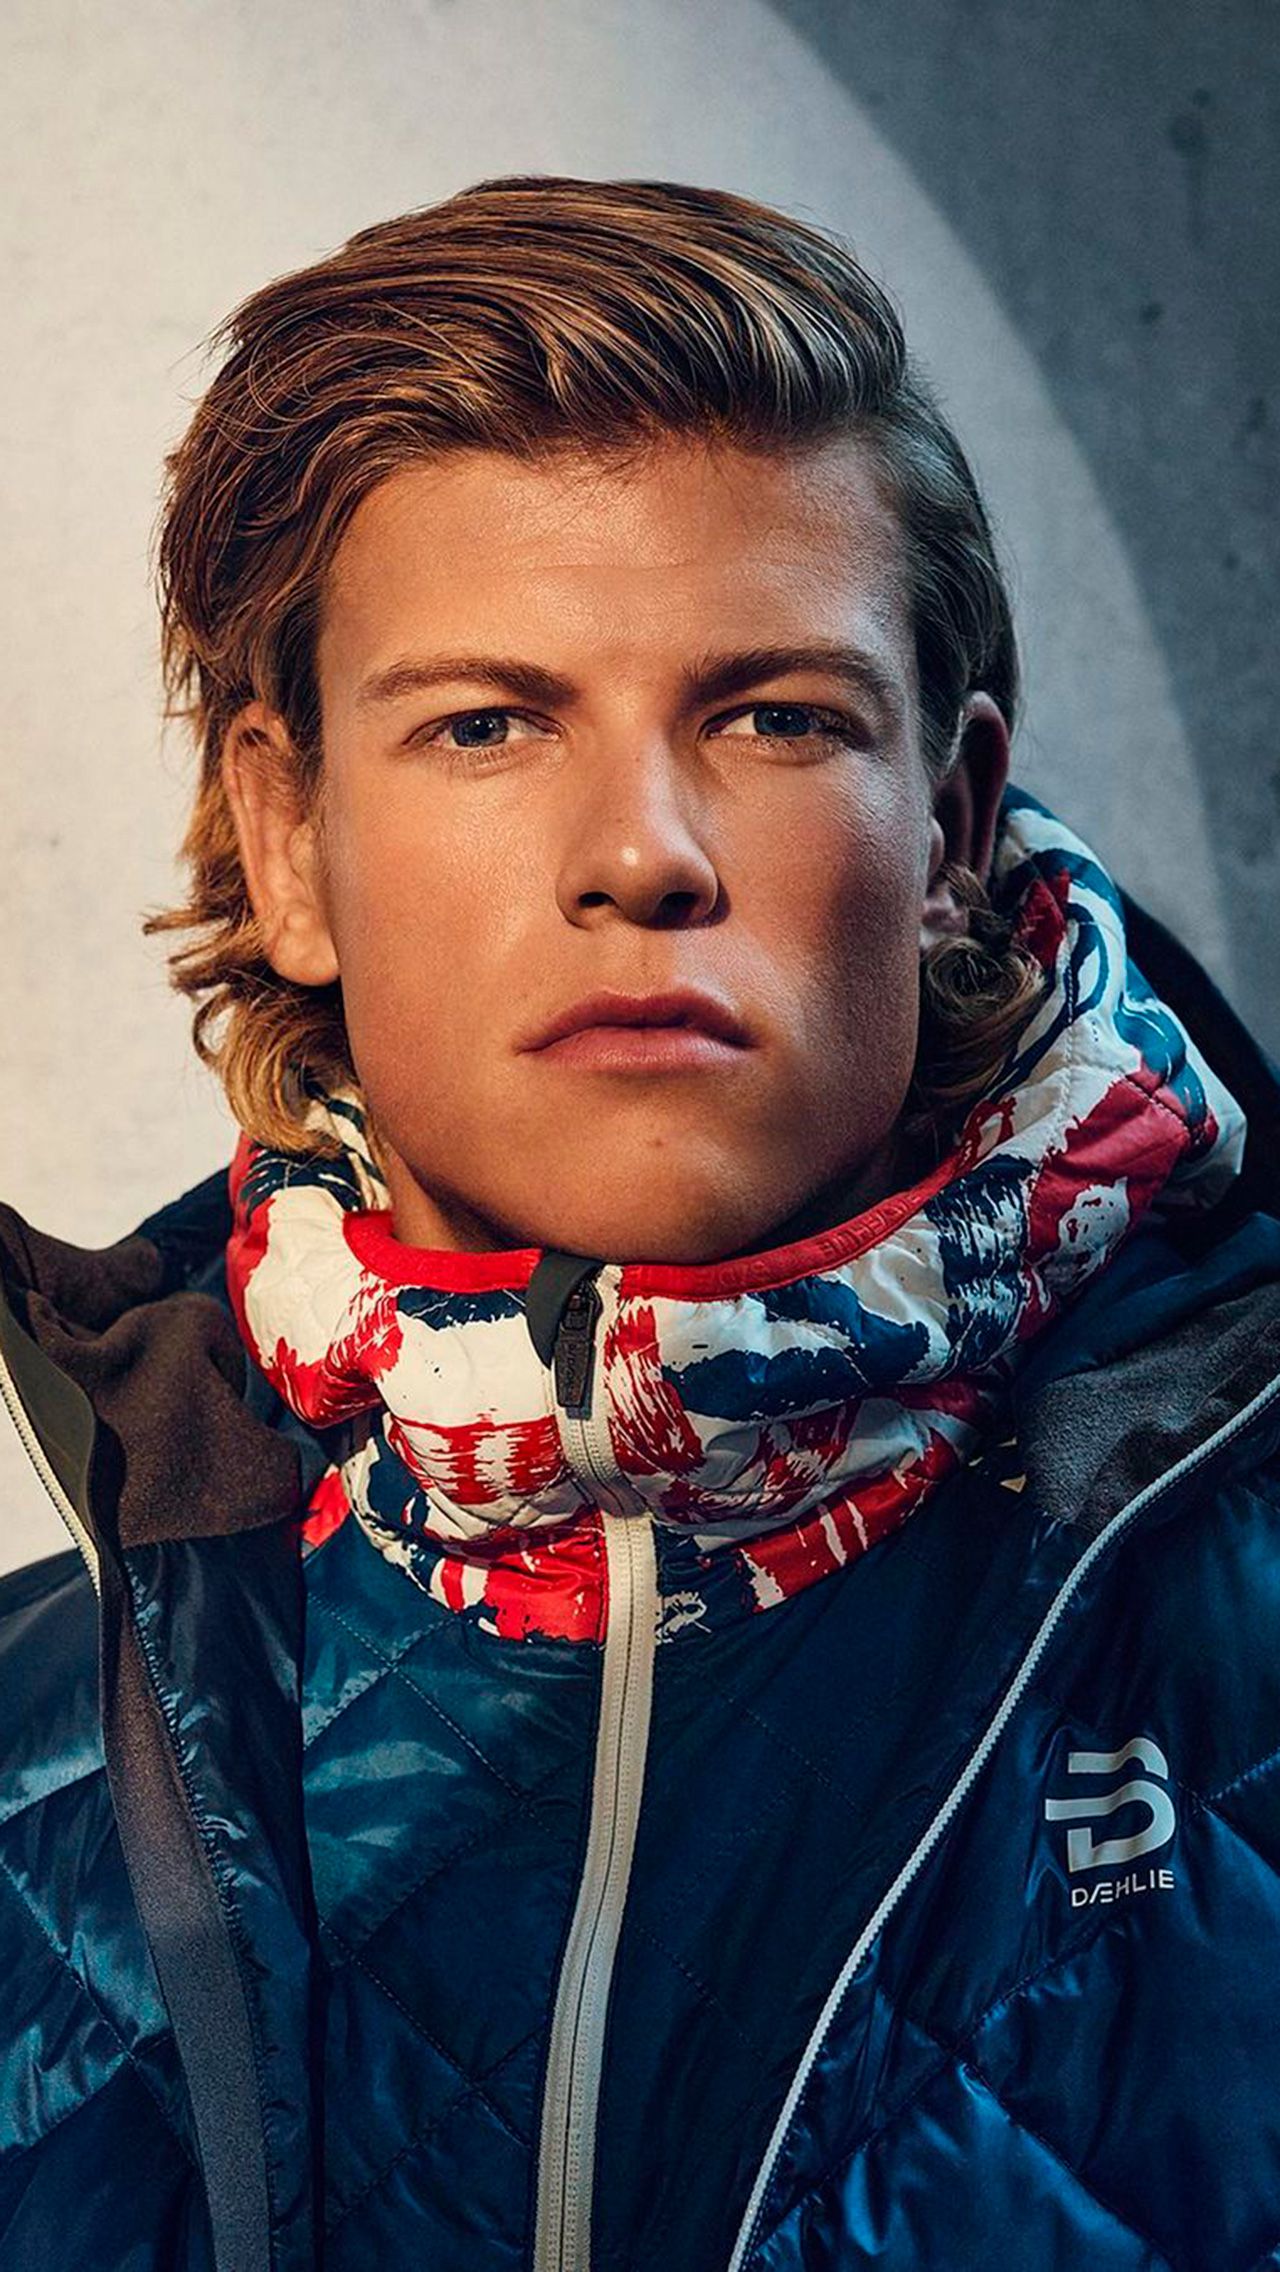 Дэли принимал участие в рекламных кампаниях, он запустил бренд фирменной лыжной одежды Dæhlie Sportswear, которым пользуются топовые спортсмены (включая Йоханнеса Клебо), организовал телевизионное шоу под названием Gutta på tur.